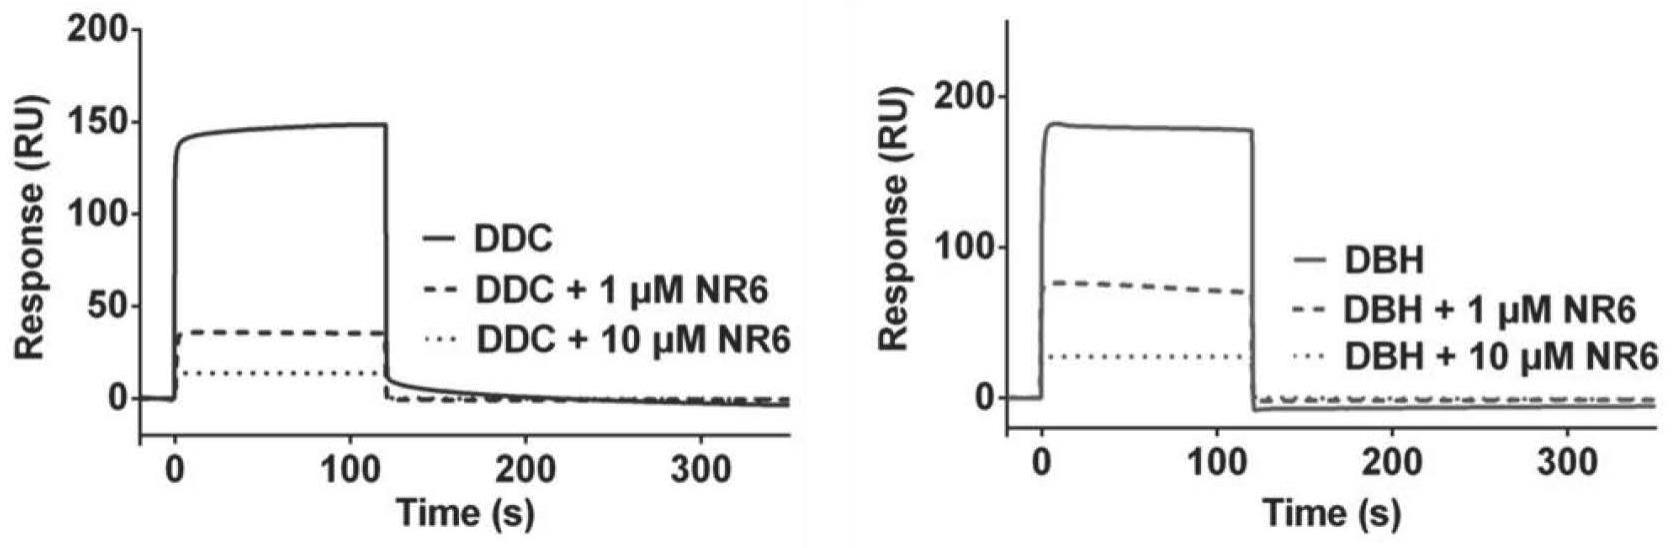 一种具有双重调节DBH和DDC酶活性功能的多肽NR6及其应用